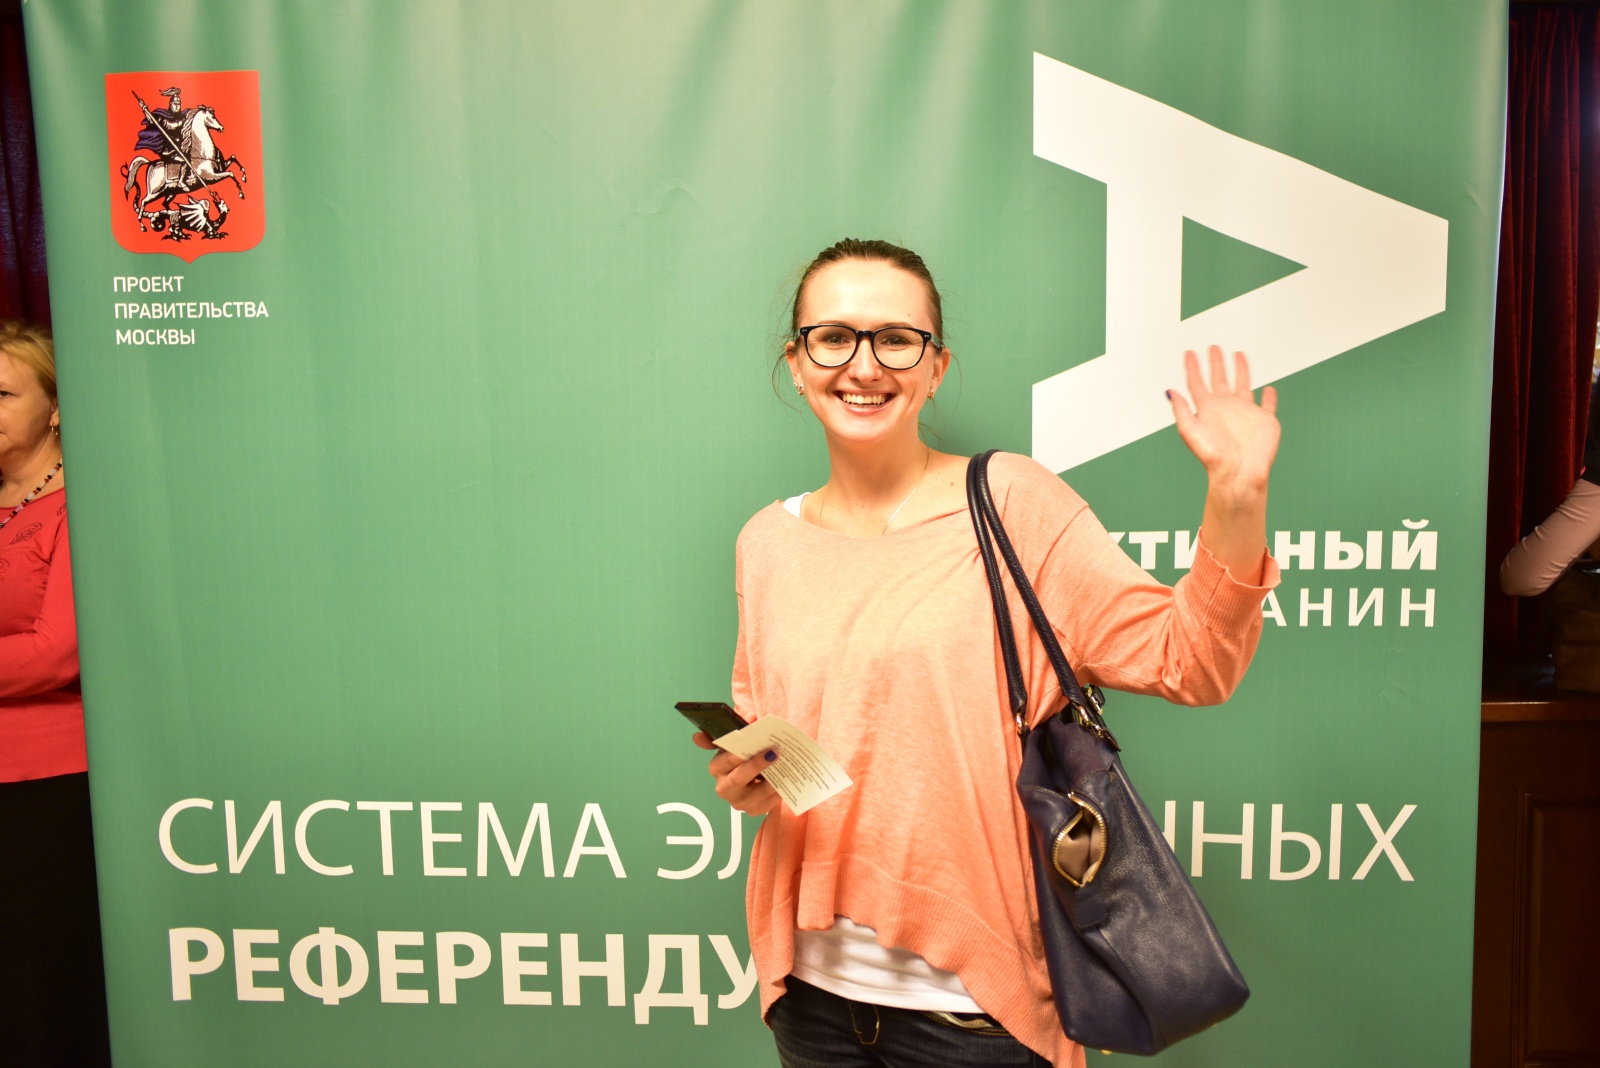 Бесплатные экскурсии и квесты пройдут 21 мая в Москве в честь двухлетия "Активного гражданина"